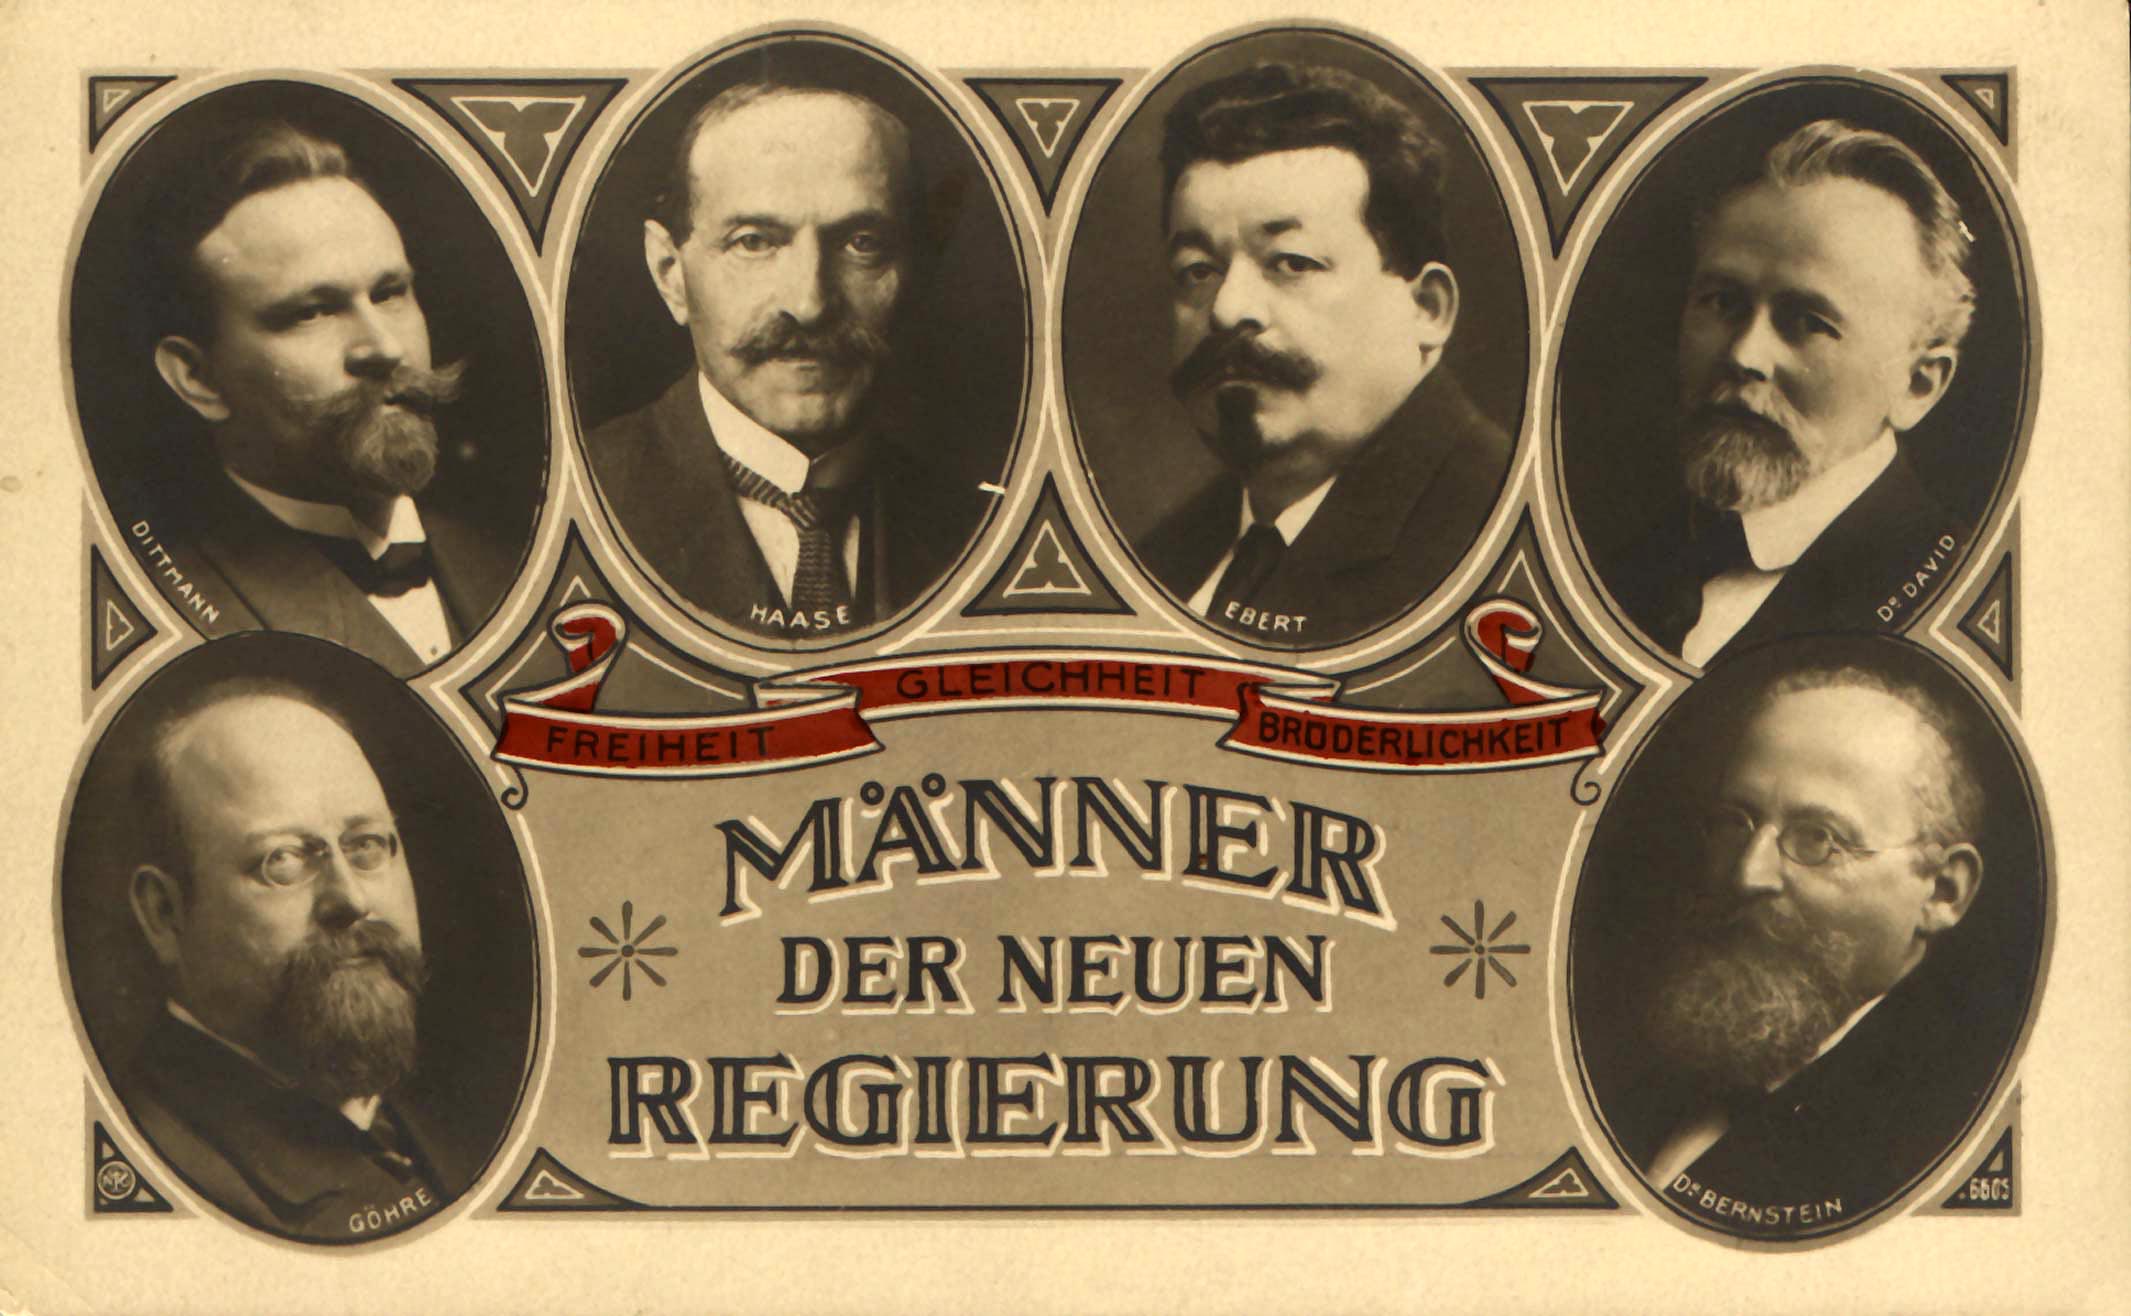 Mitglieder der neuen deutschen Regierung. Paul Göhre, Wilhelm Dittmann, Hugo Haase, Friedrich Ebert, Eduard David, Eduard Bernstein. Postkarte 1919. 